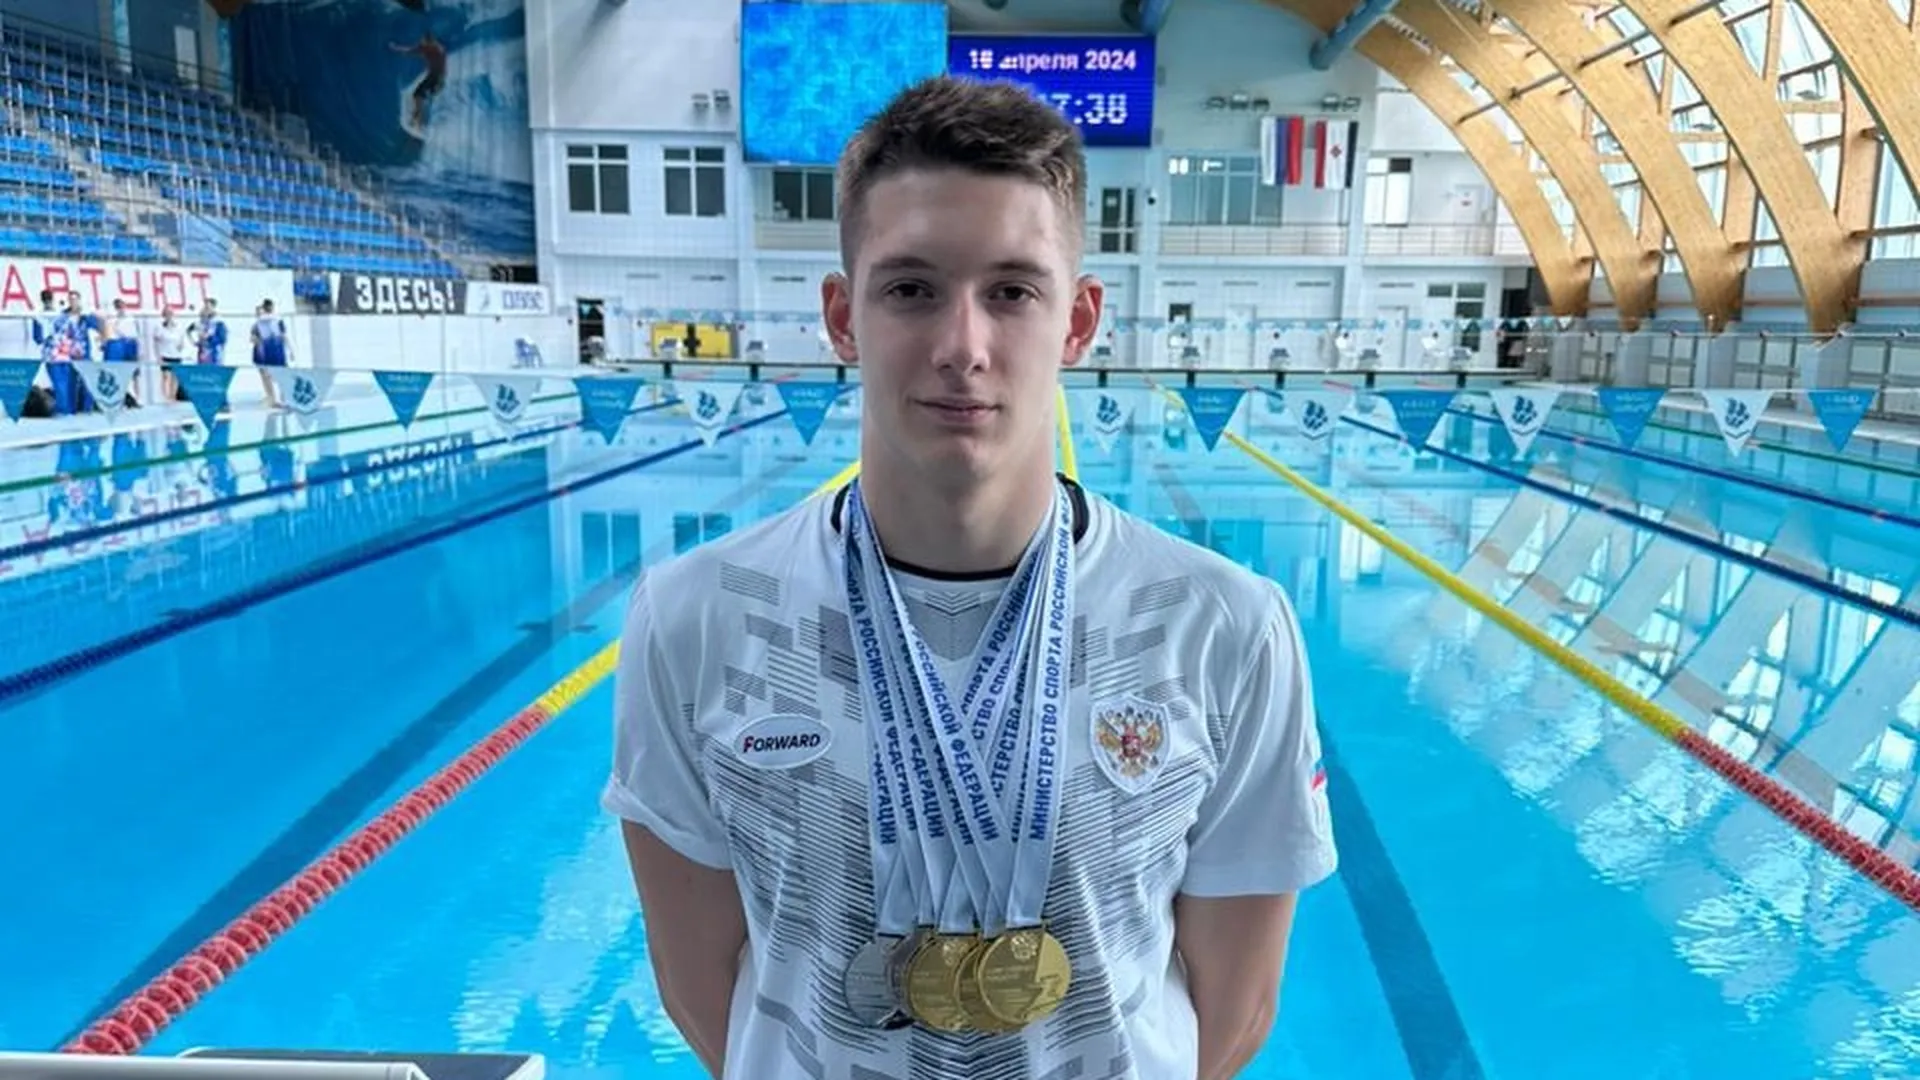 Подмосковный пловец выиграл 5 наград на чемпионате России